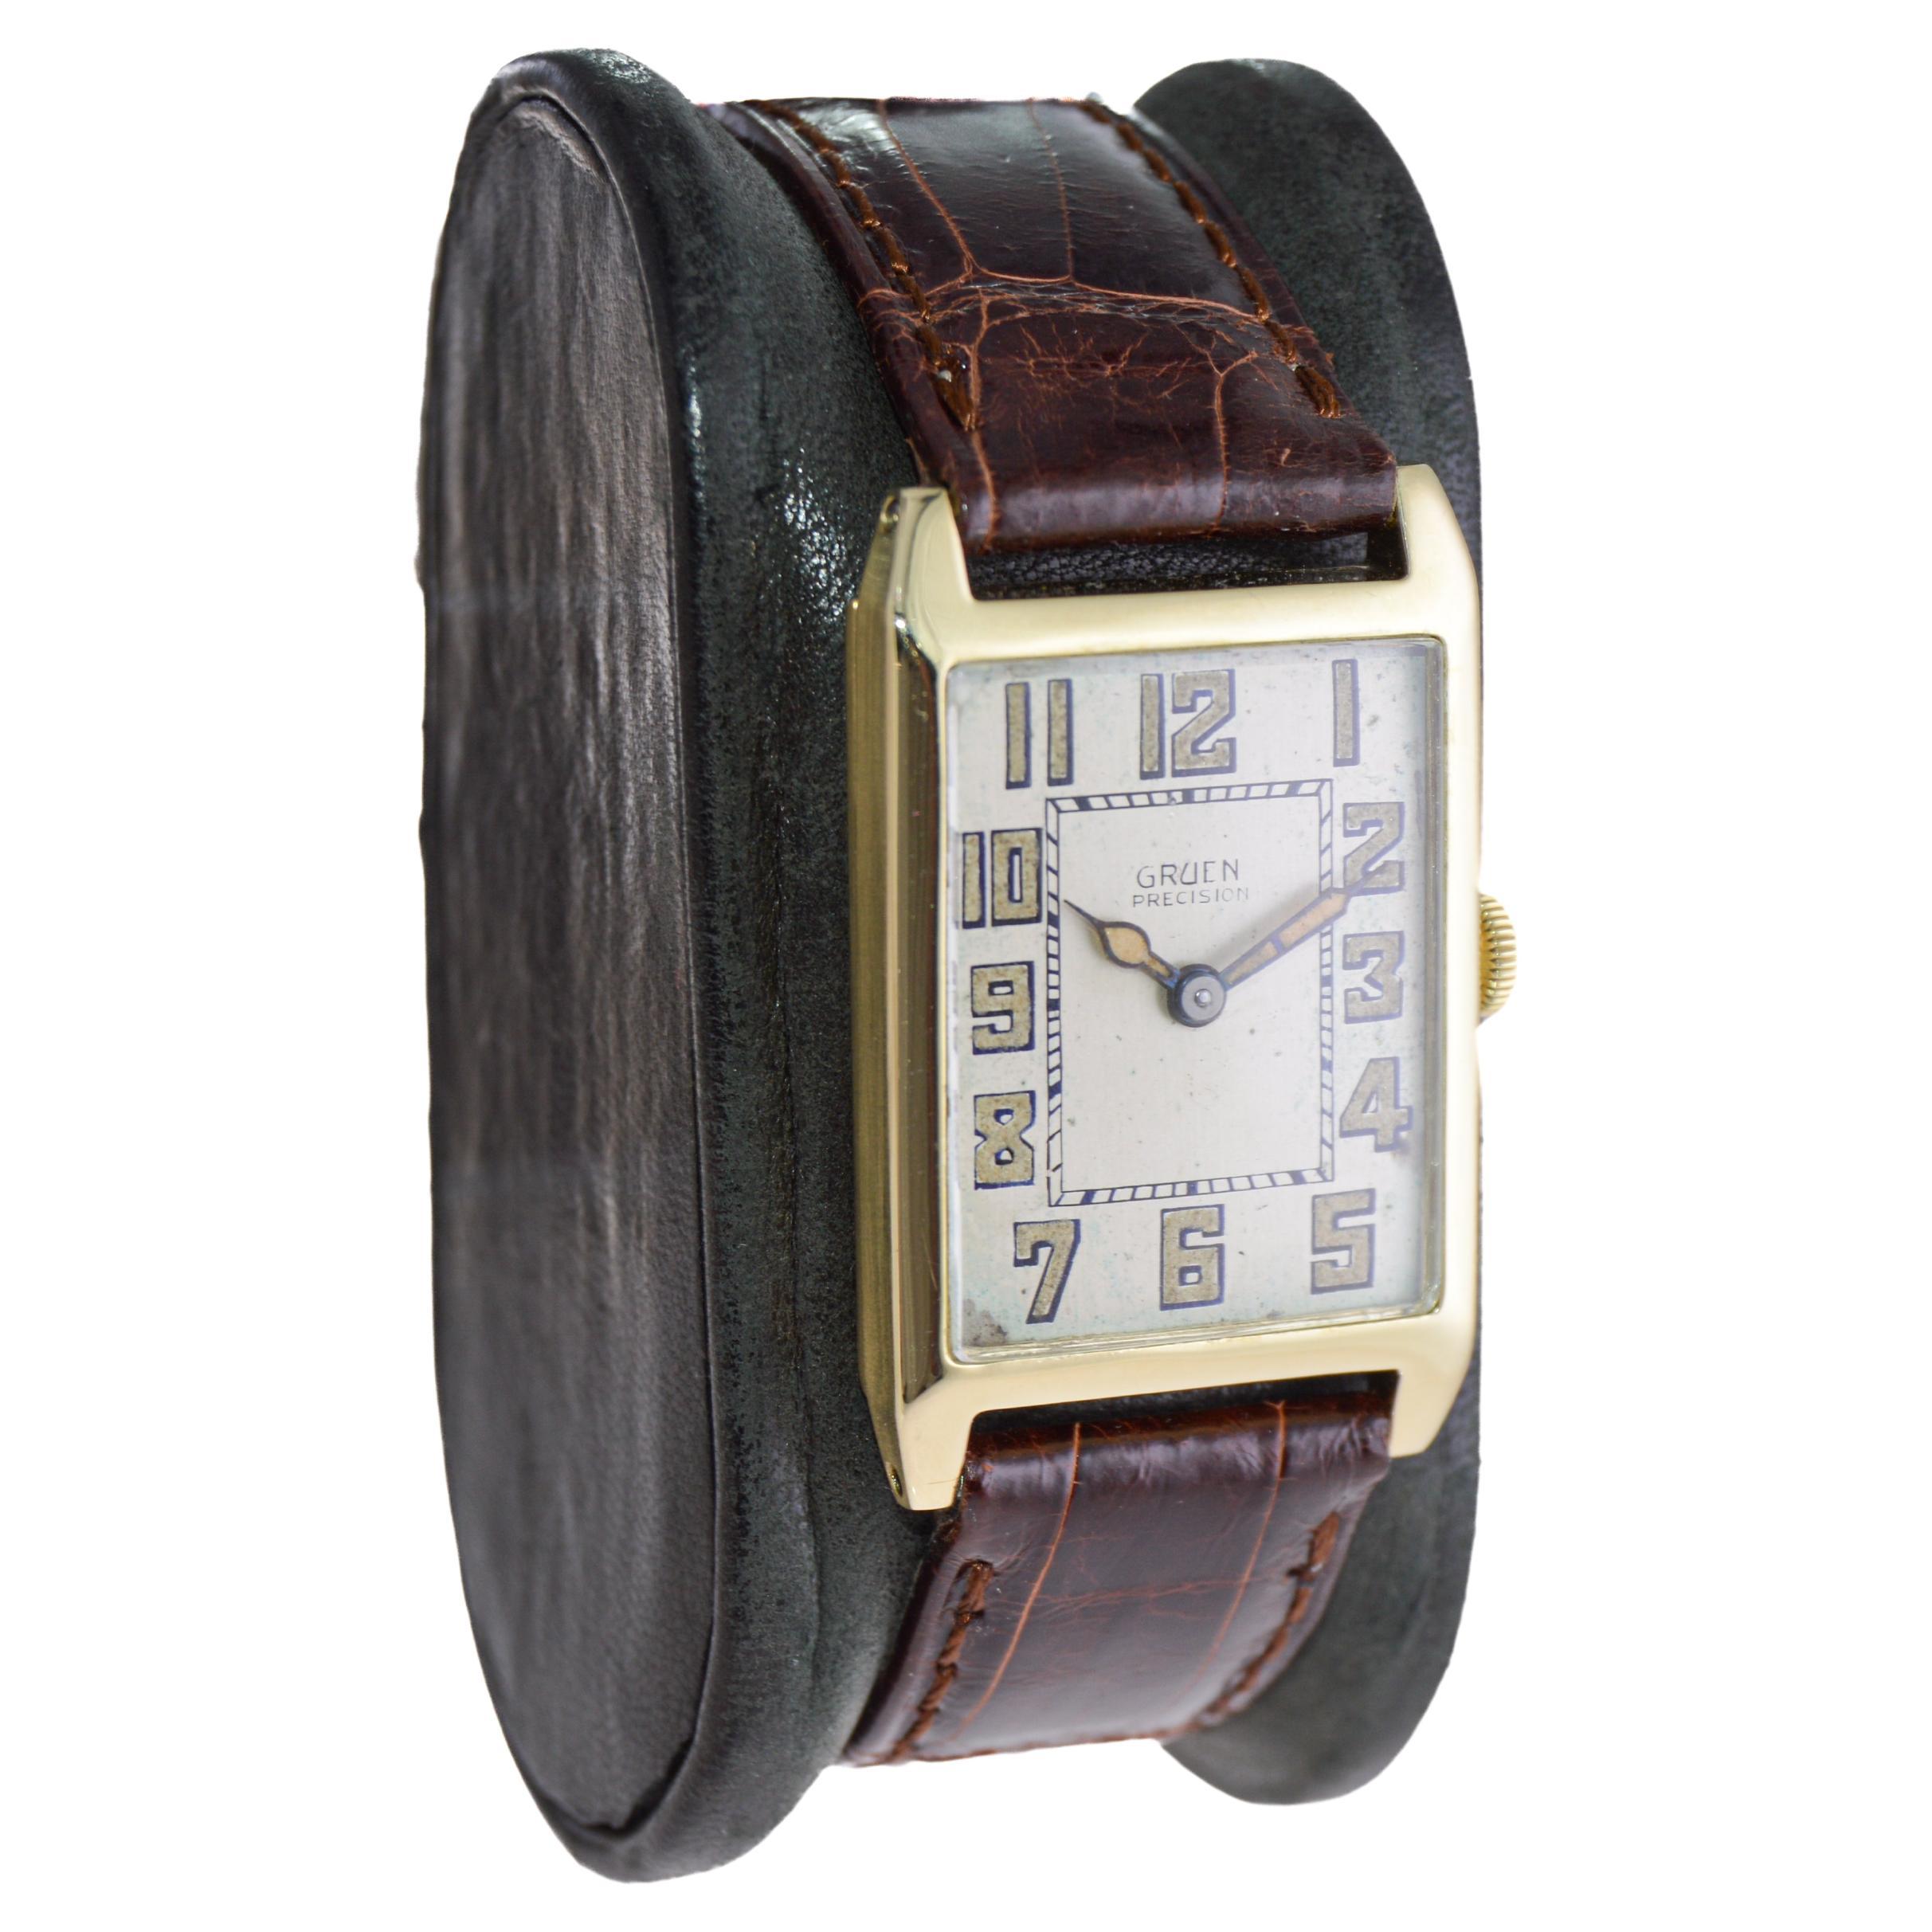 FABRIK / HAUS: Gruen Watch Company
STIL / REFERENZ: Art Deco / Panzer-Stil
METALL / MATERIAL: 14Kt. Massiv Gold 
CIRCA / JAHR: 1930
ABMESSUNGEN / GRÖSSE: Länge 37mm X Breite 23mm
UHRWERK / KALIBER: Handaufzug / 17 Jewels / Kaliber 98
ZIFFERBLATT /